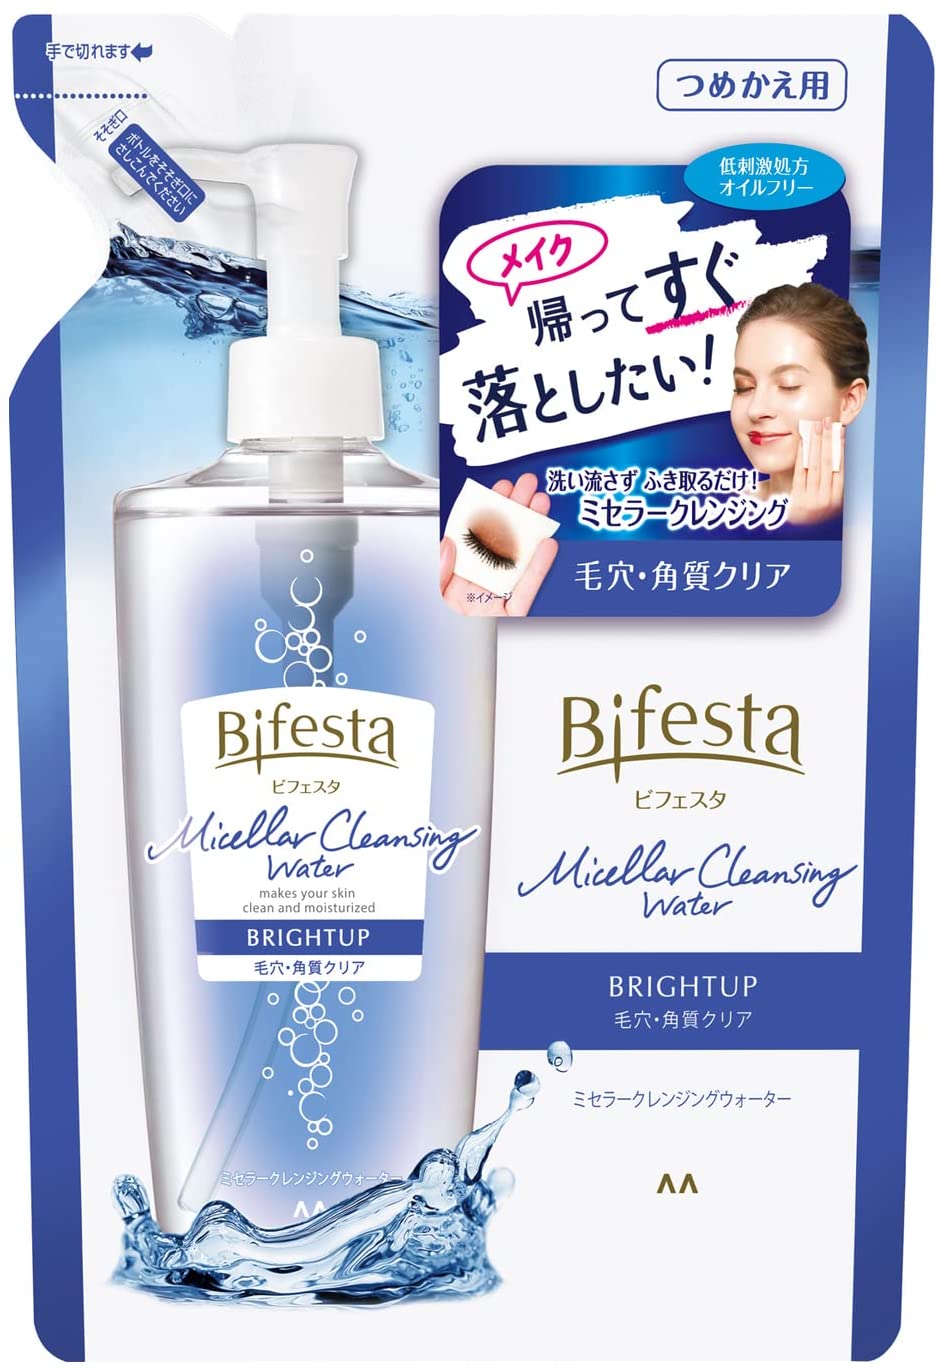 入荷中 Bifesta(ビフェスタ) ミセラークレンジングウォーター ふき取りタ つめかえ用 ブライトアップ クレンジングオイル